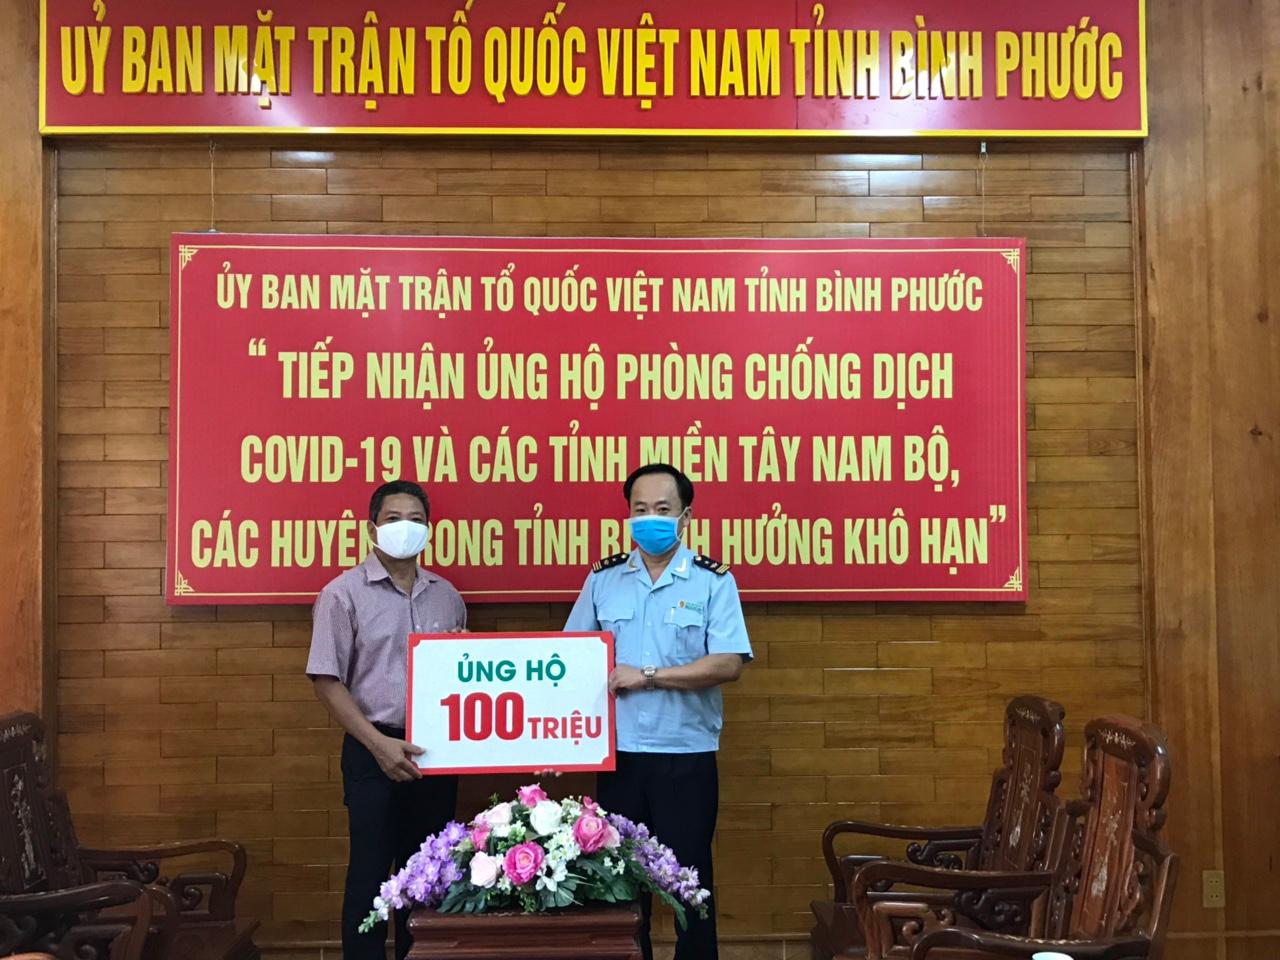 Cục Hải quan tỉnh Bình phước chung tay ủng hộ tiền phòng, chống dịch Covid-19 tại ủy Ban Mặt trận tổ quốc Việt Nam tỉnh Bình Phước